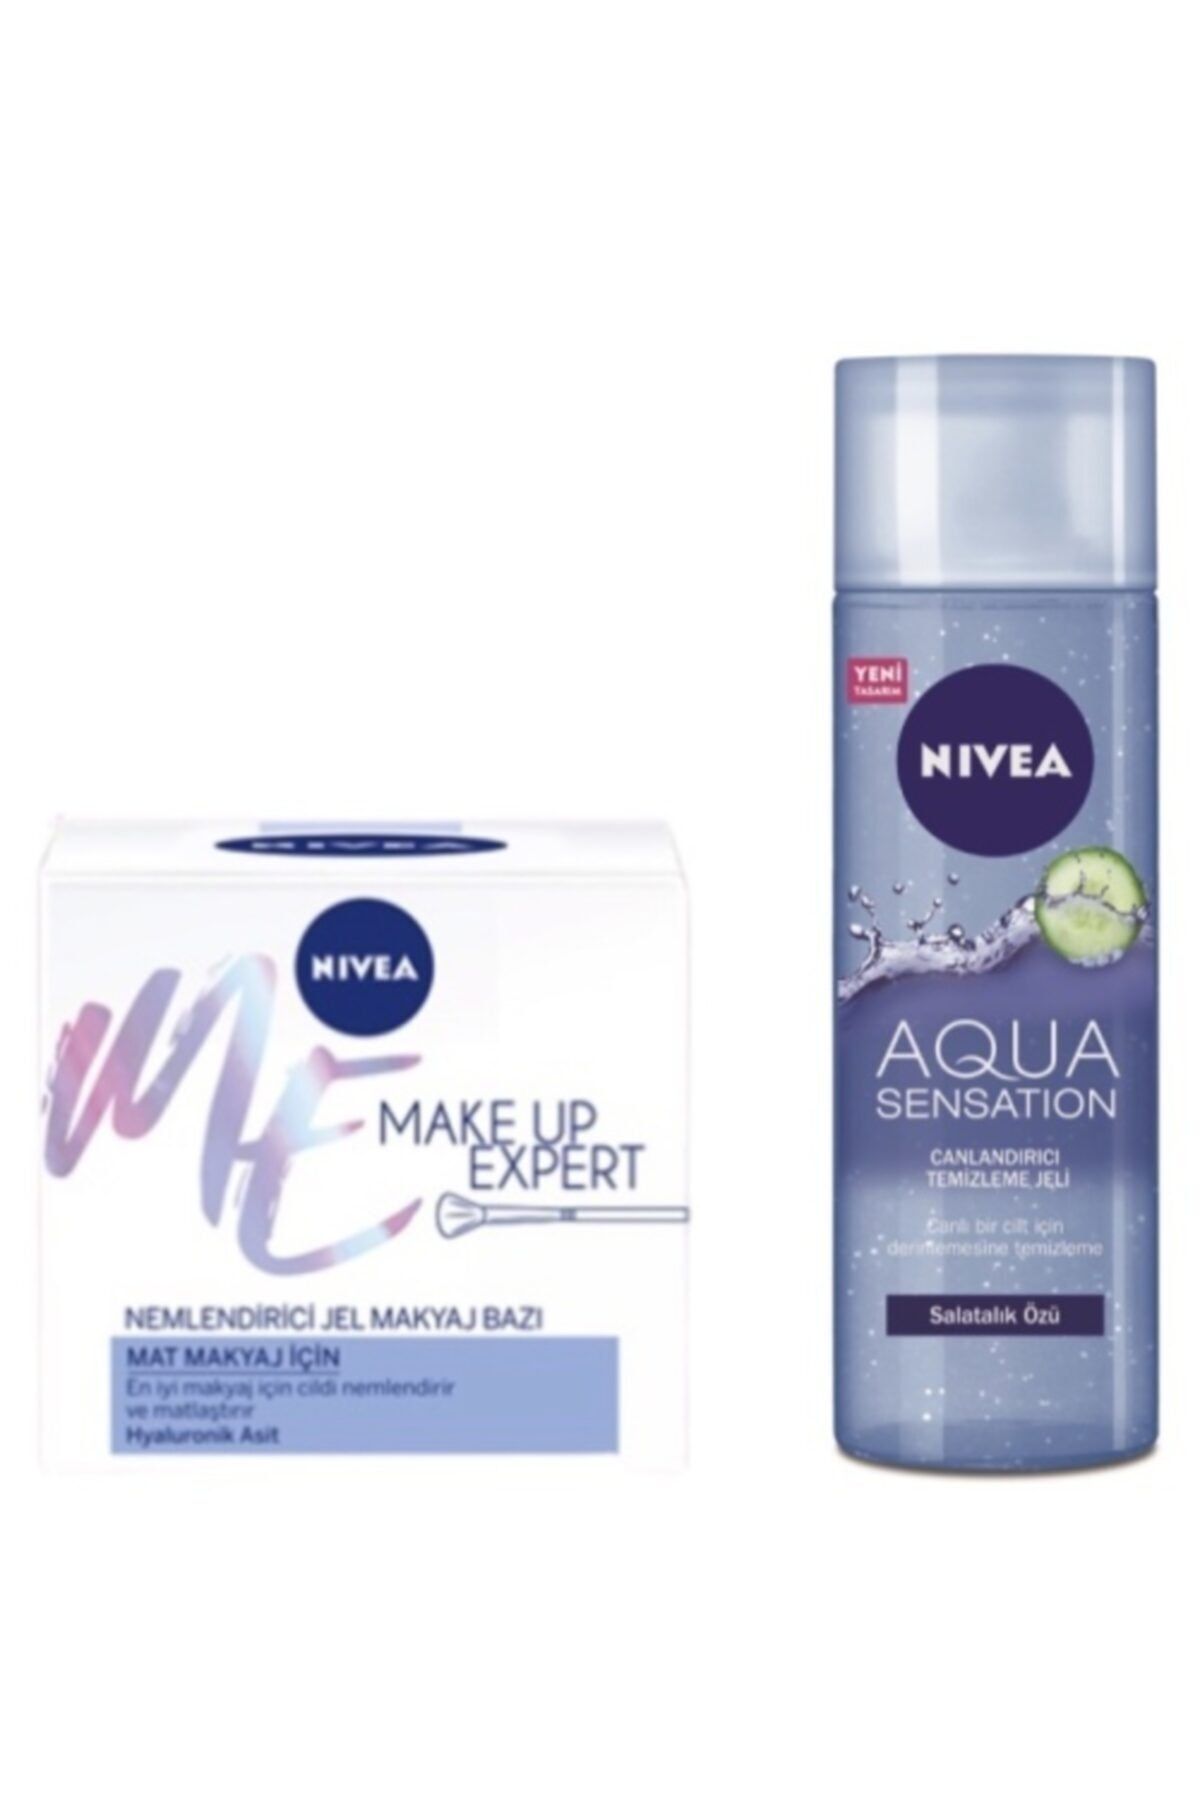 NIVEA Make Up Expert Mat Nemlendirici Jel Makyaj Bazı 50 ml + Aqua Sensation Canlandırıcı Temizleme Jeli